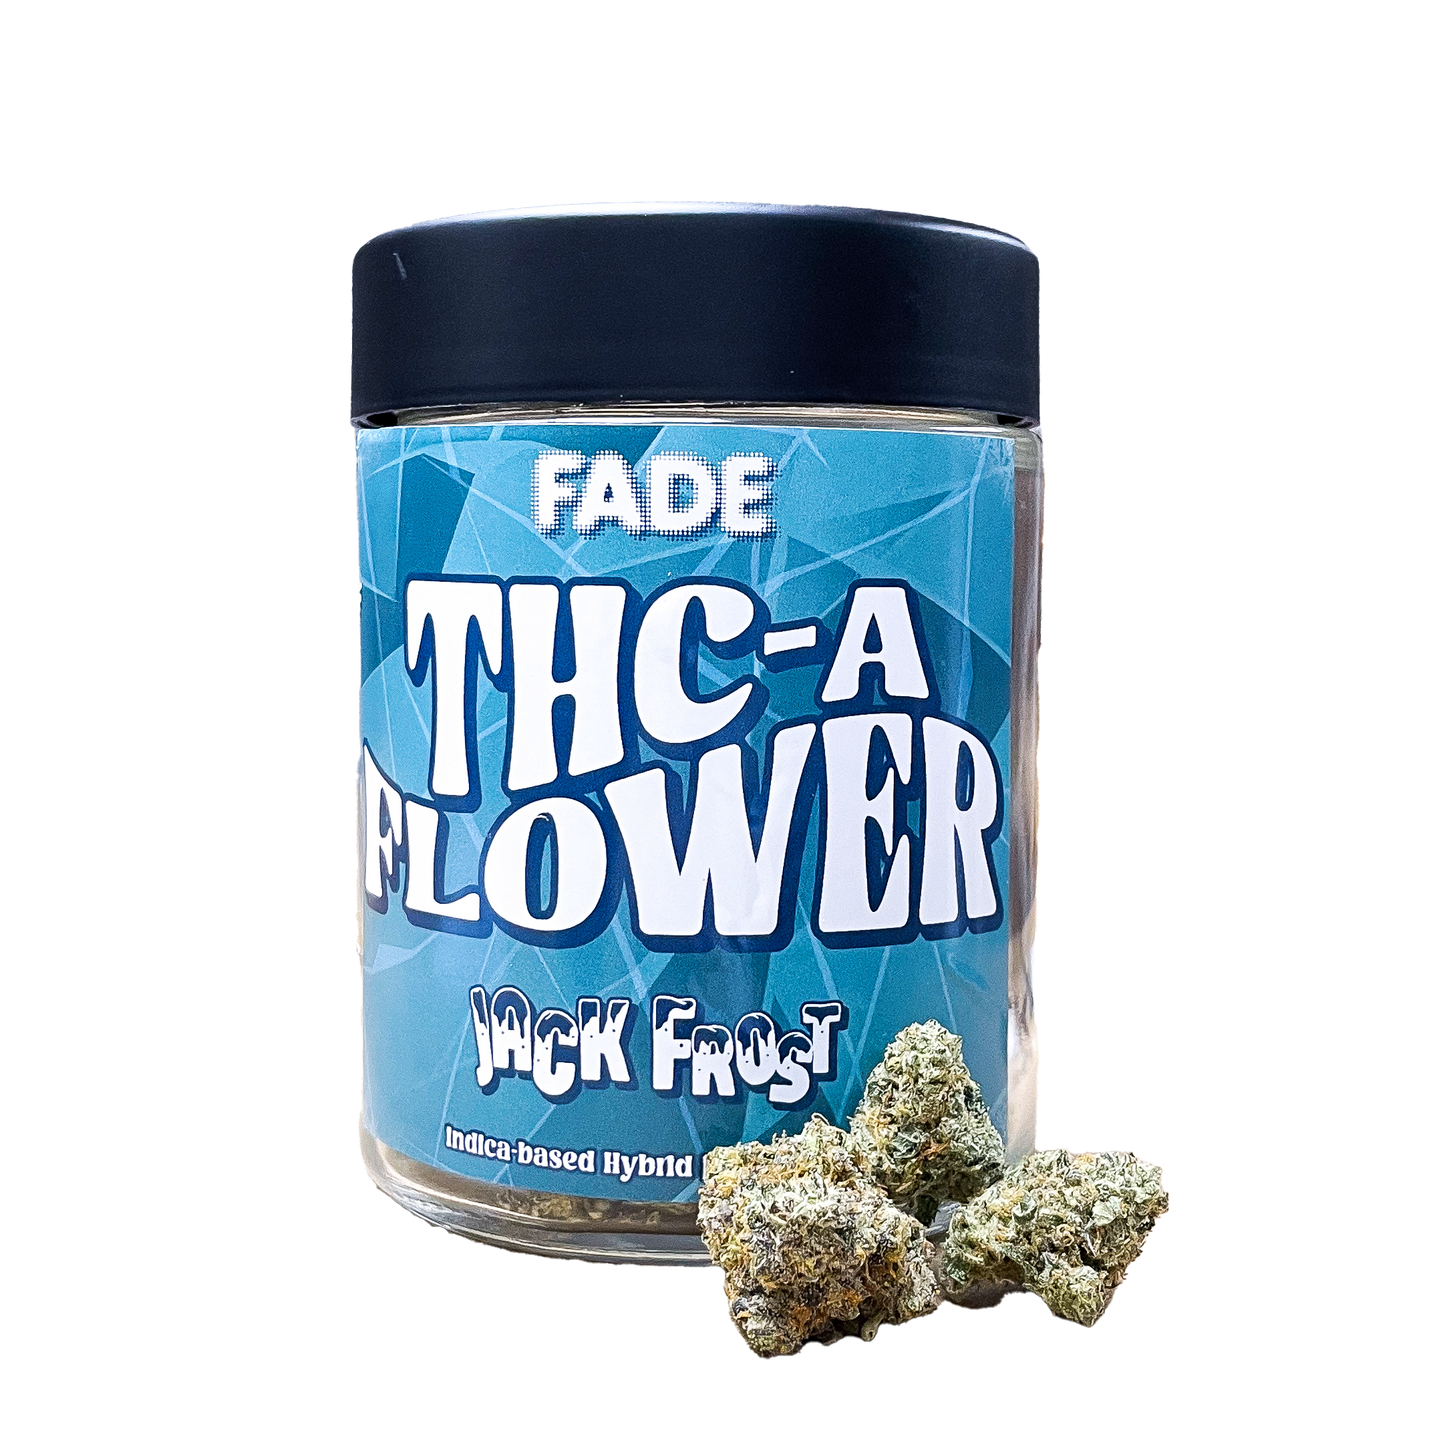 FADE THC-A Flower (1 oz/28G)